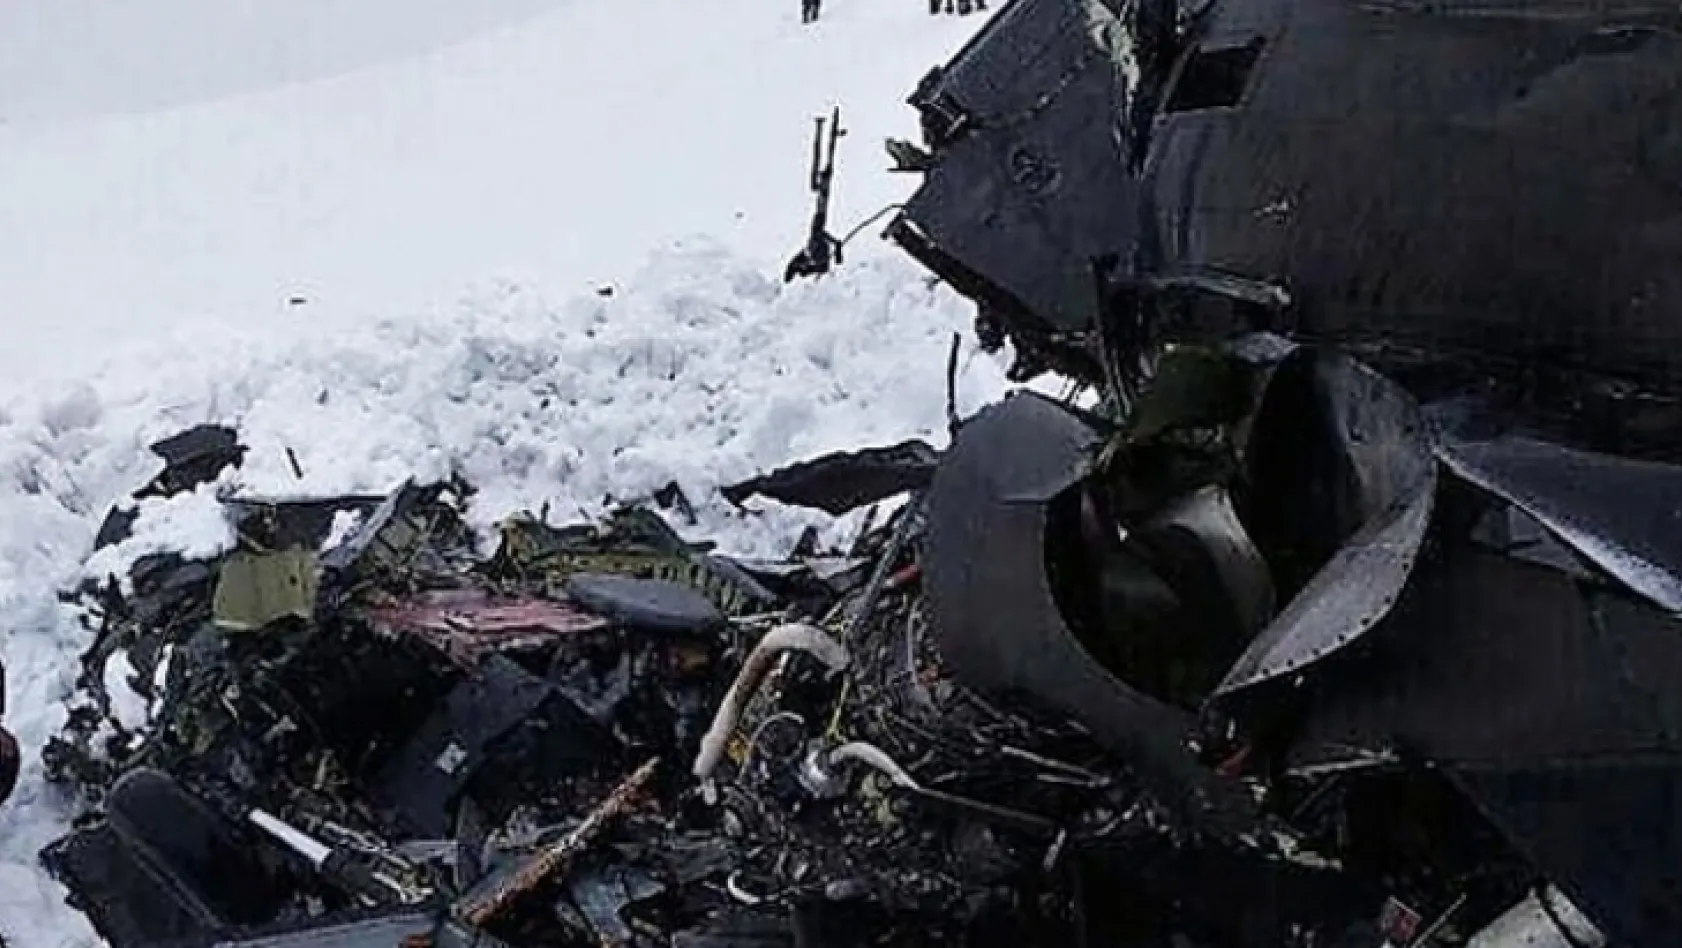 Tunceli Valiliği: 'Olumsuz hava şartları helikopter kazasına neden oldu'